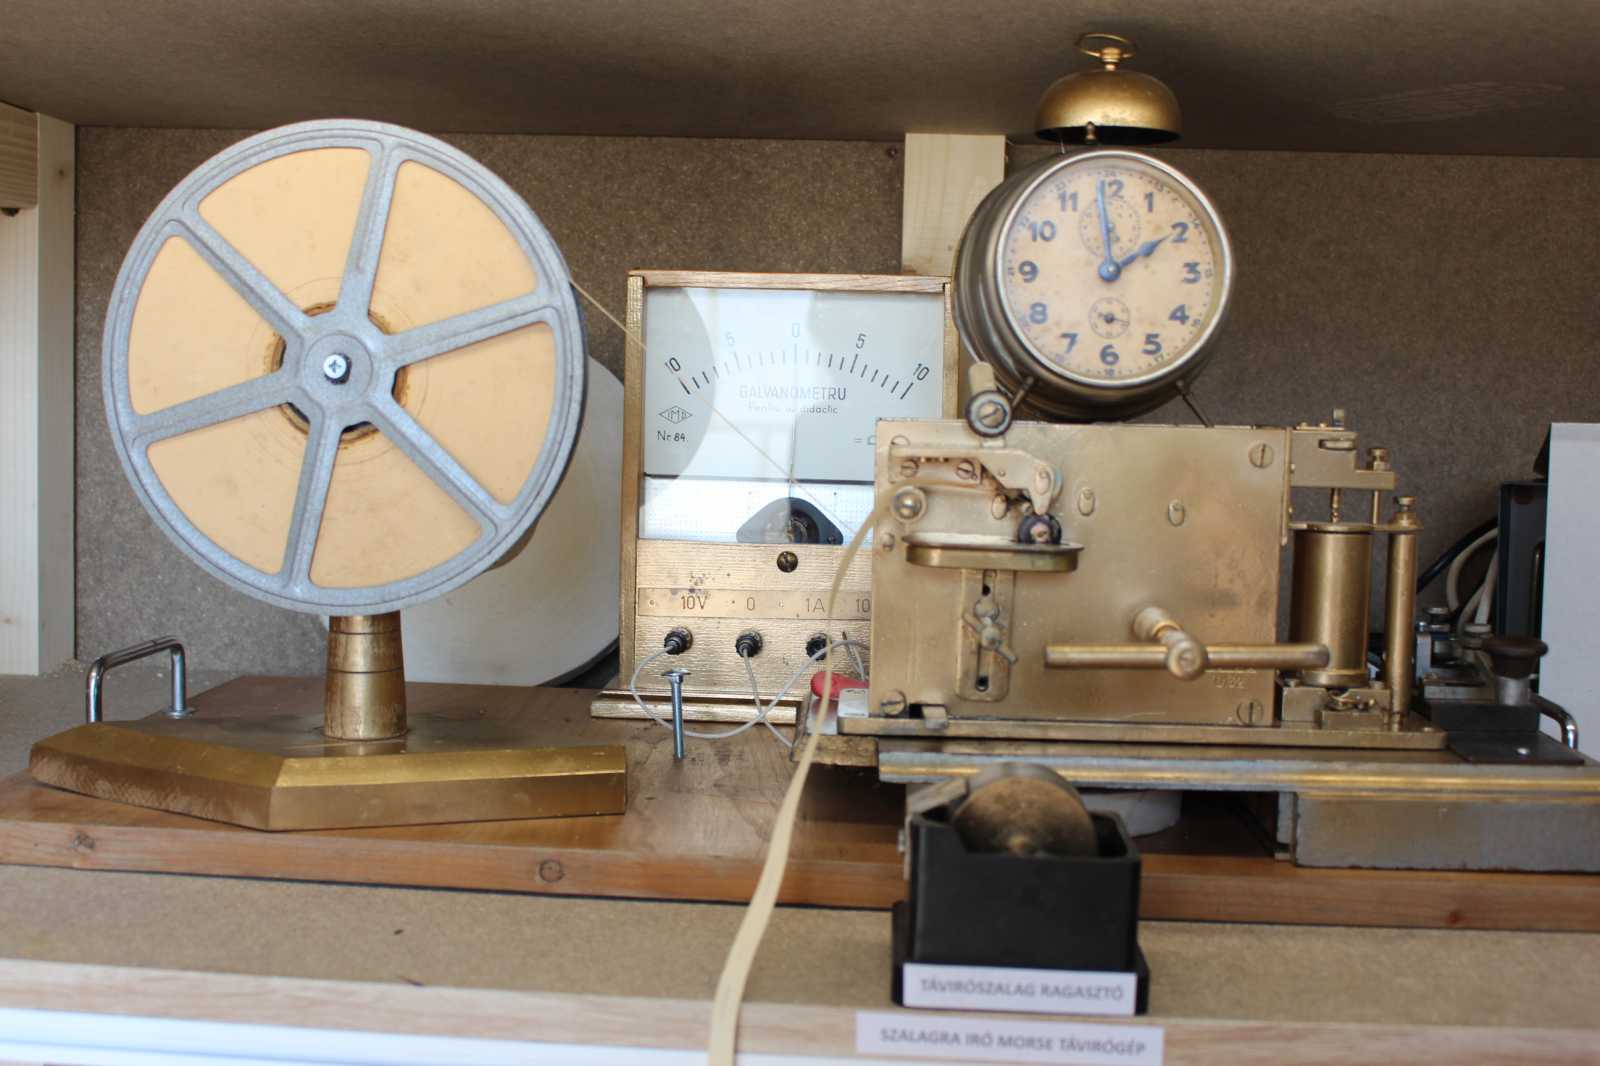 A múzeumban megtekinthető Morse-gép | Fotók: Erdély András